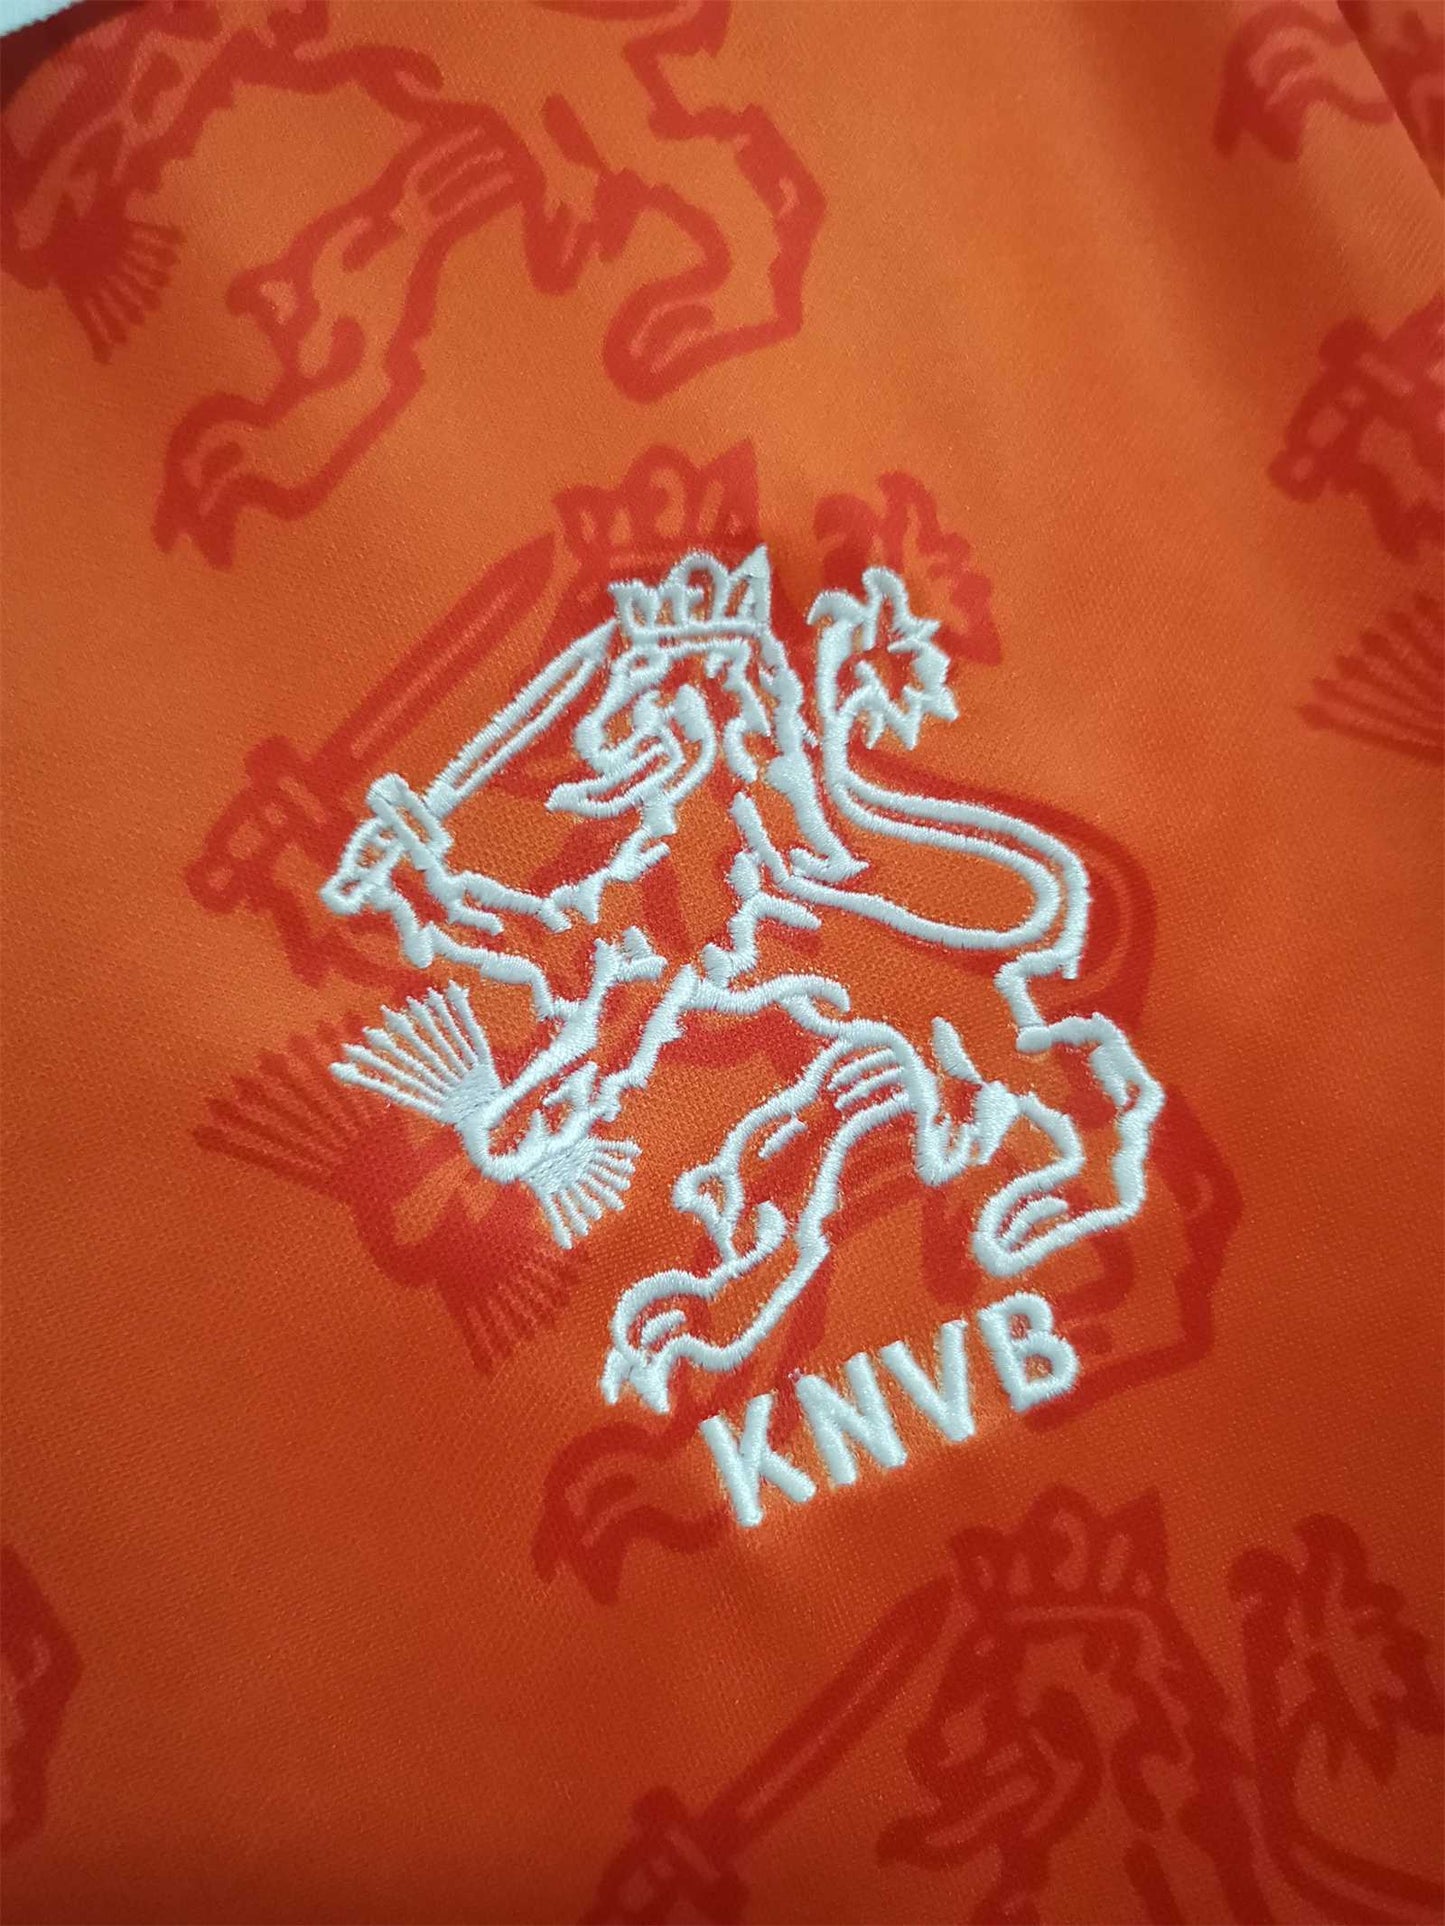 Netherlands 1994 Home Shirt